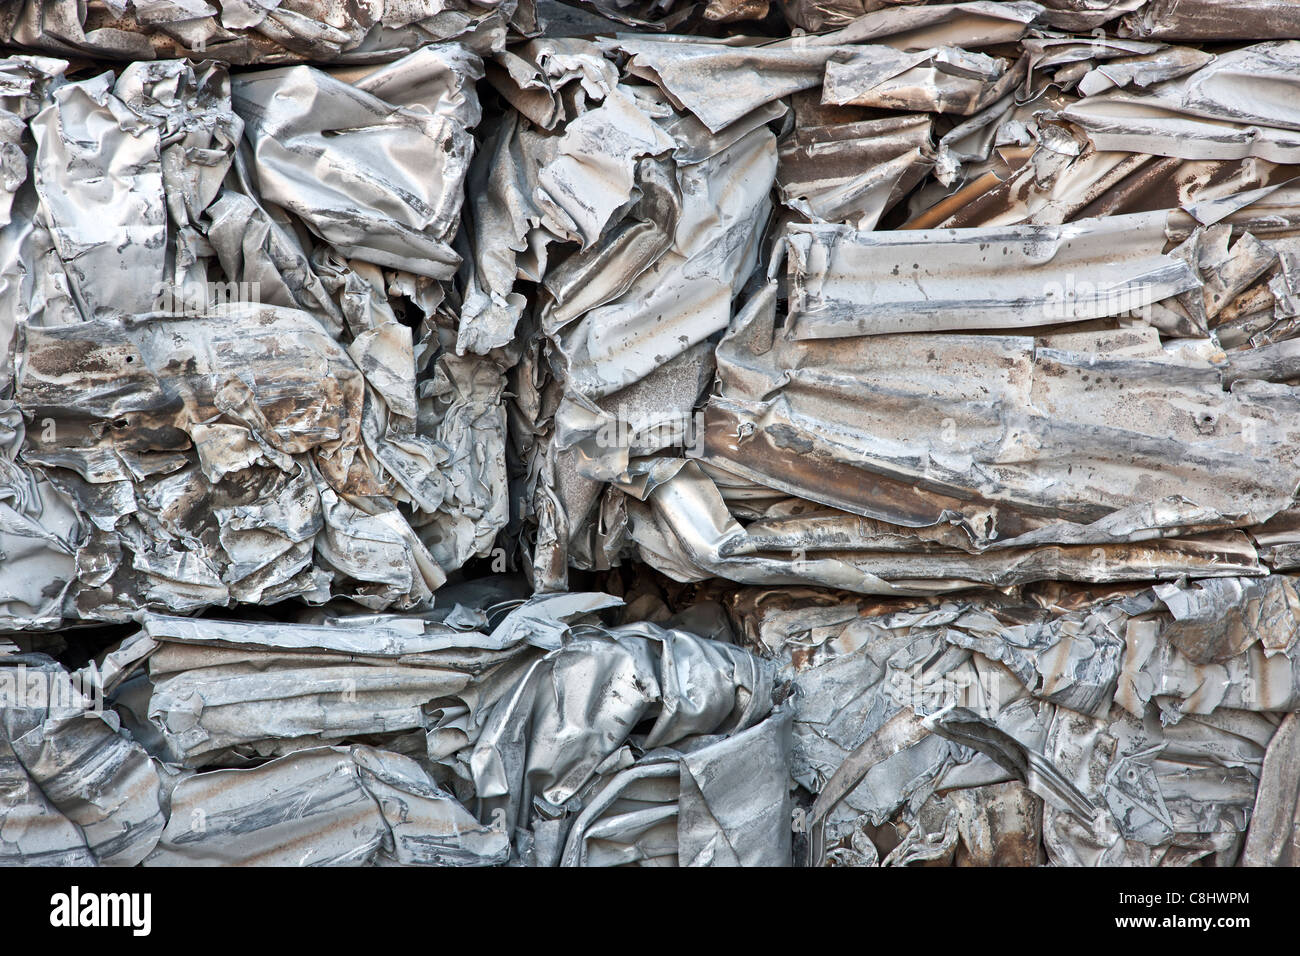 Le recyclage, les feuilles d'aluminium compactés. Banque D'Images